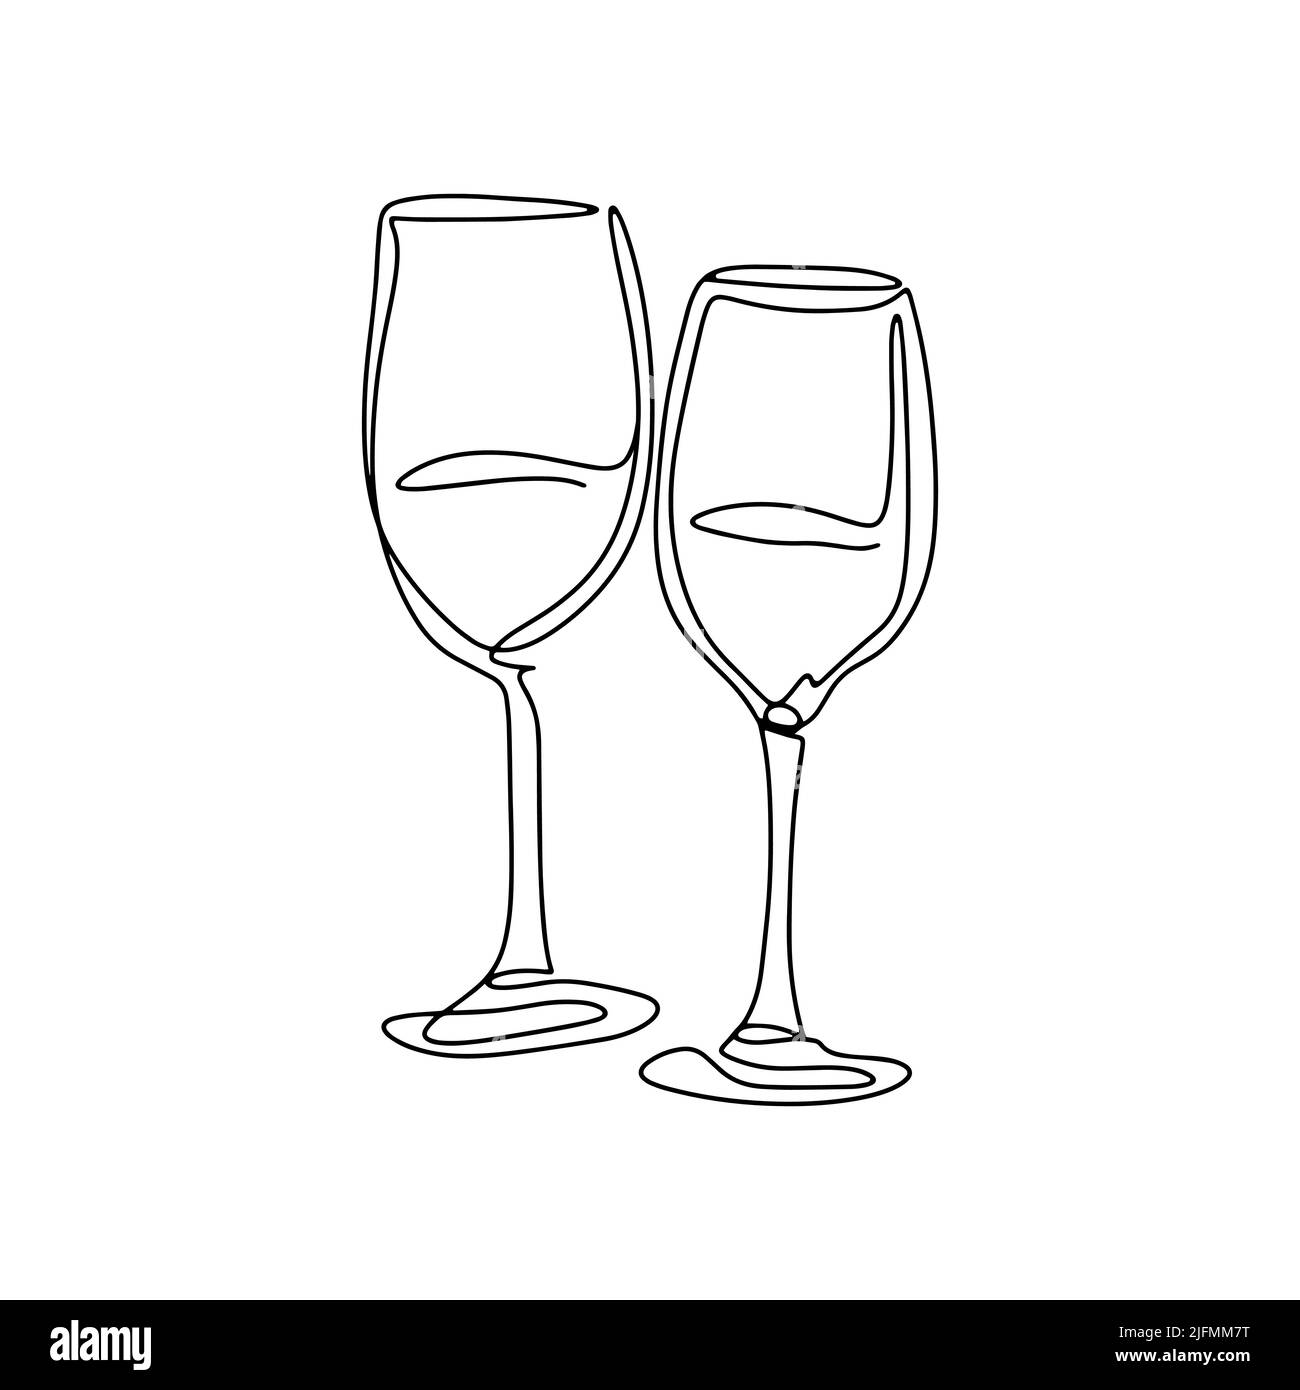 Coppia di bicchieri da vino isolato line art vettoriale. Bicchieri sulle gambe per bevande alcoliche. Vetreria per bere contorno nero su sfondo bianco Illustrazione Vettoriale